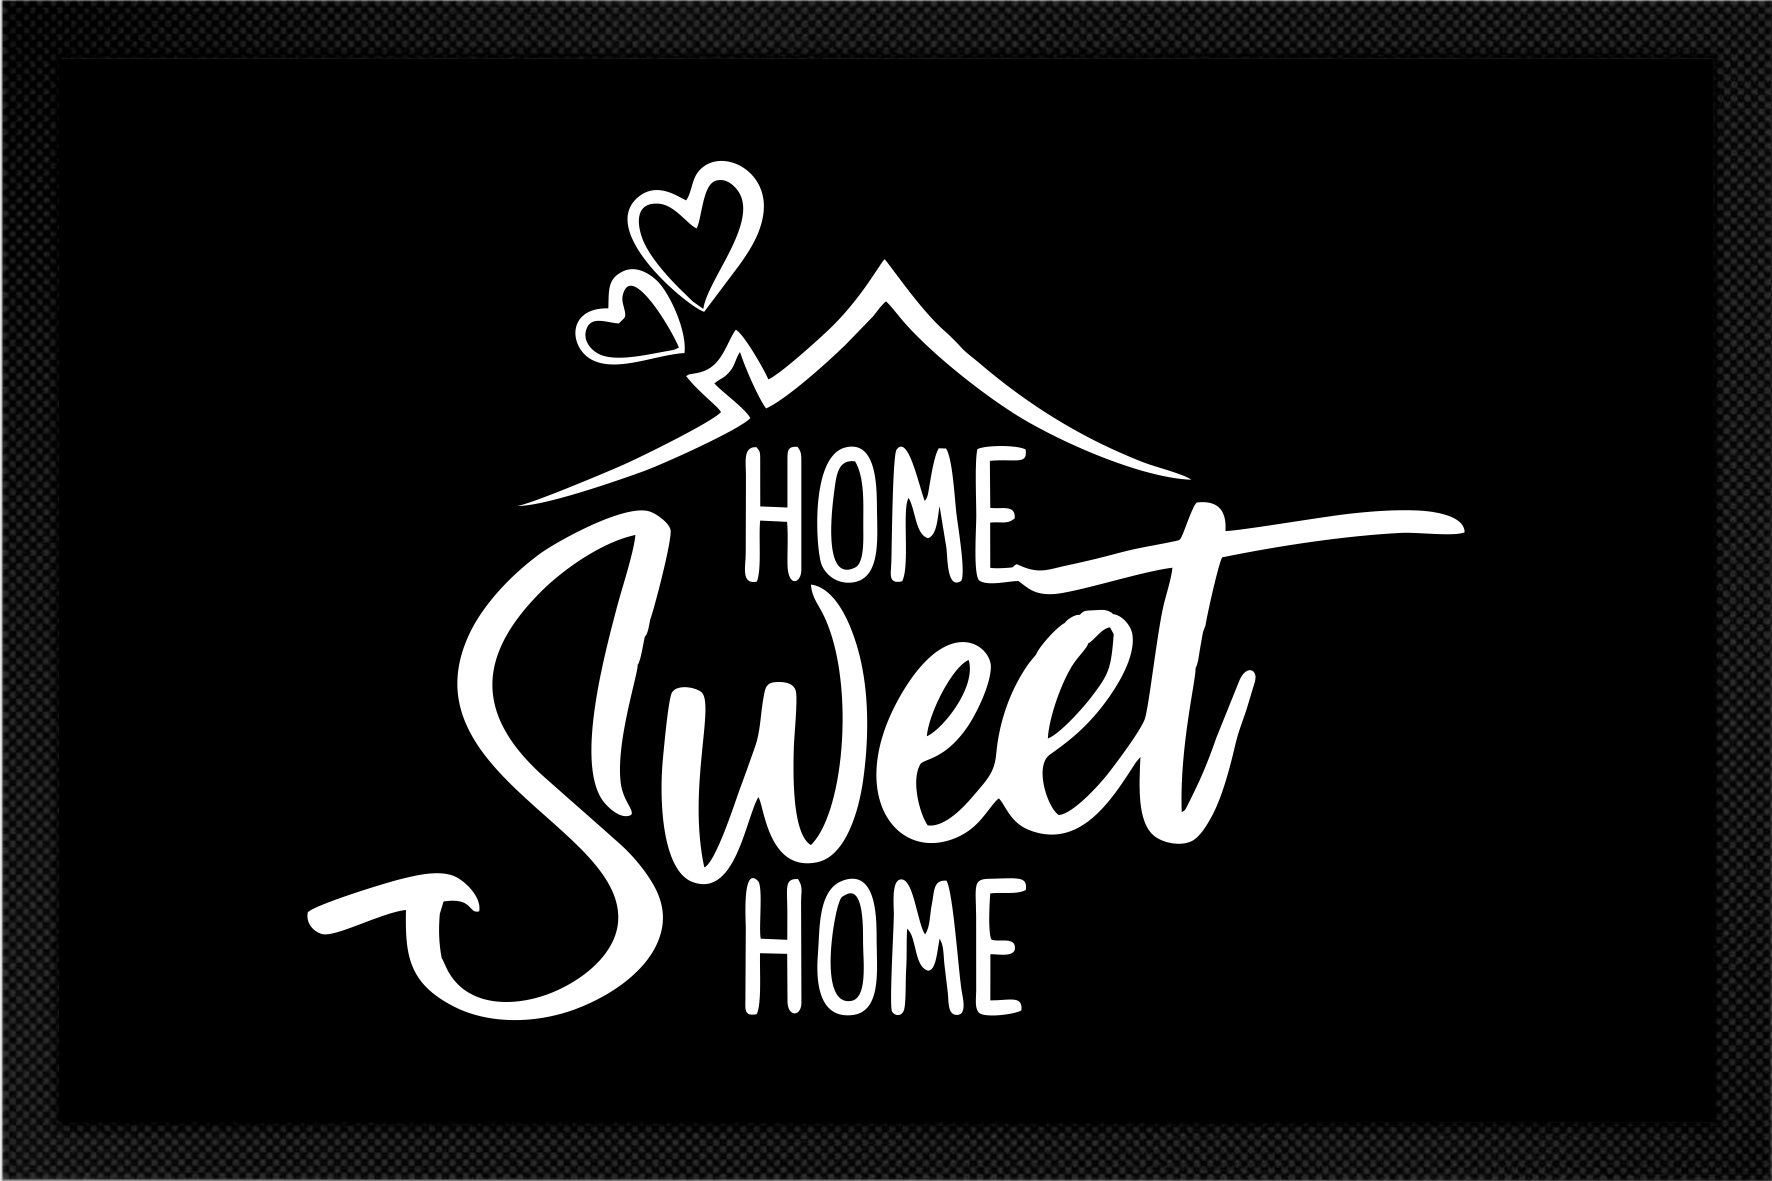 Fußmatte Home Sweet Home | Fussmattenguru - Gestalte Deine Fussmatte